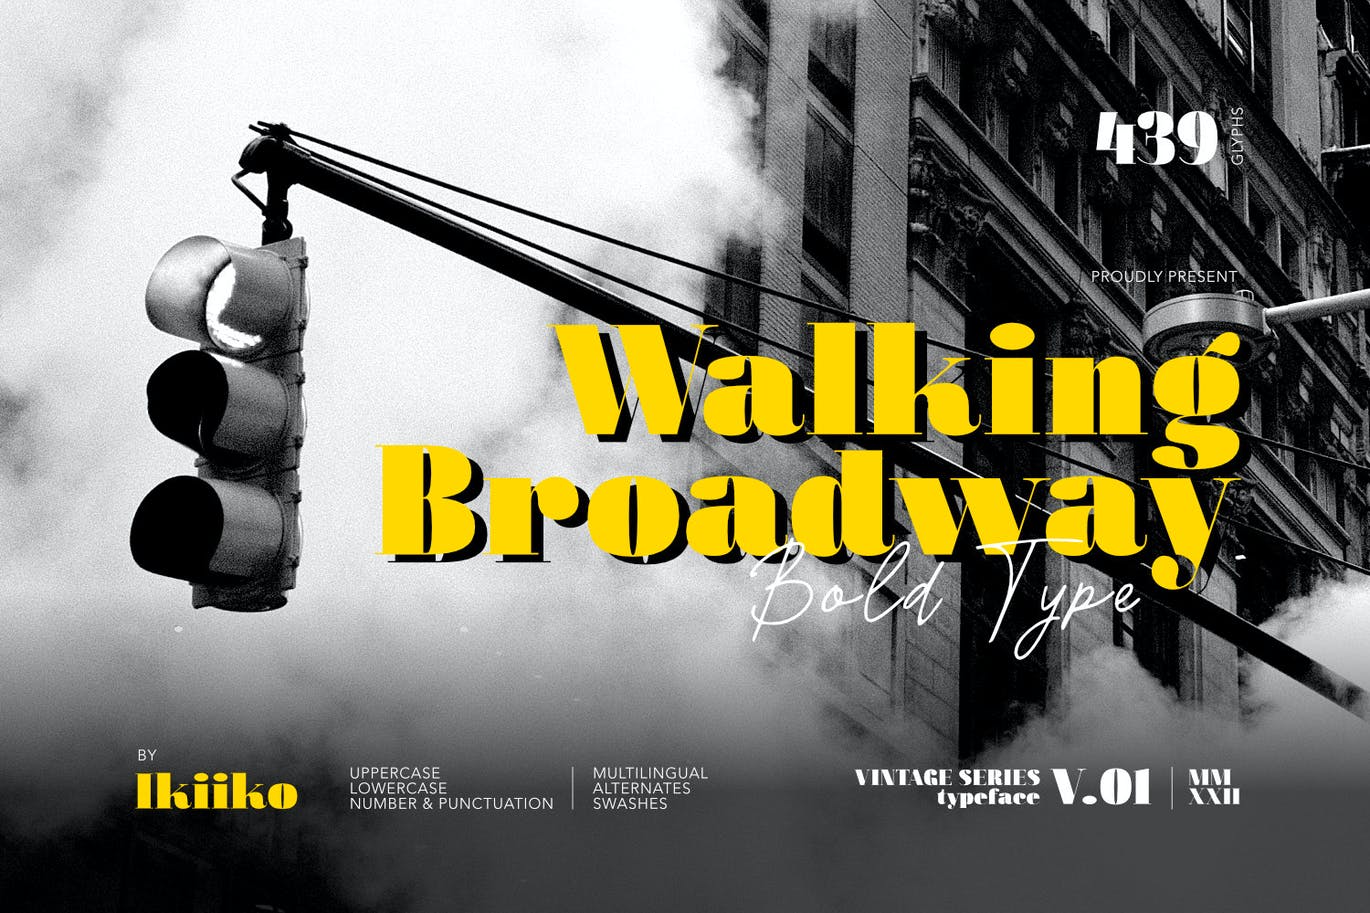 复古老式衬线加粗字体素材 Walking Broadway – Bold Type 设计素材 第1张